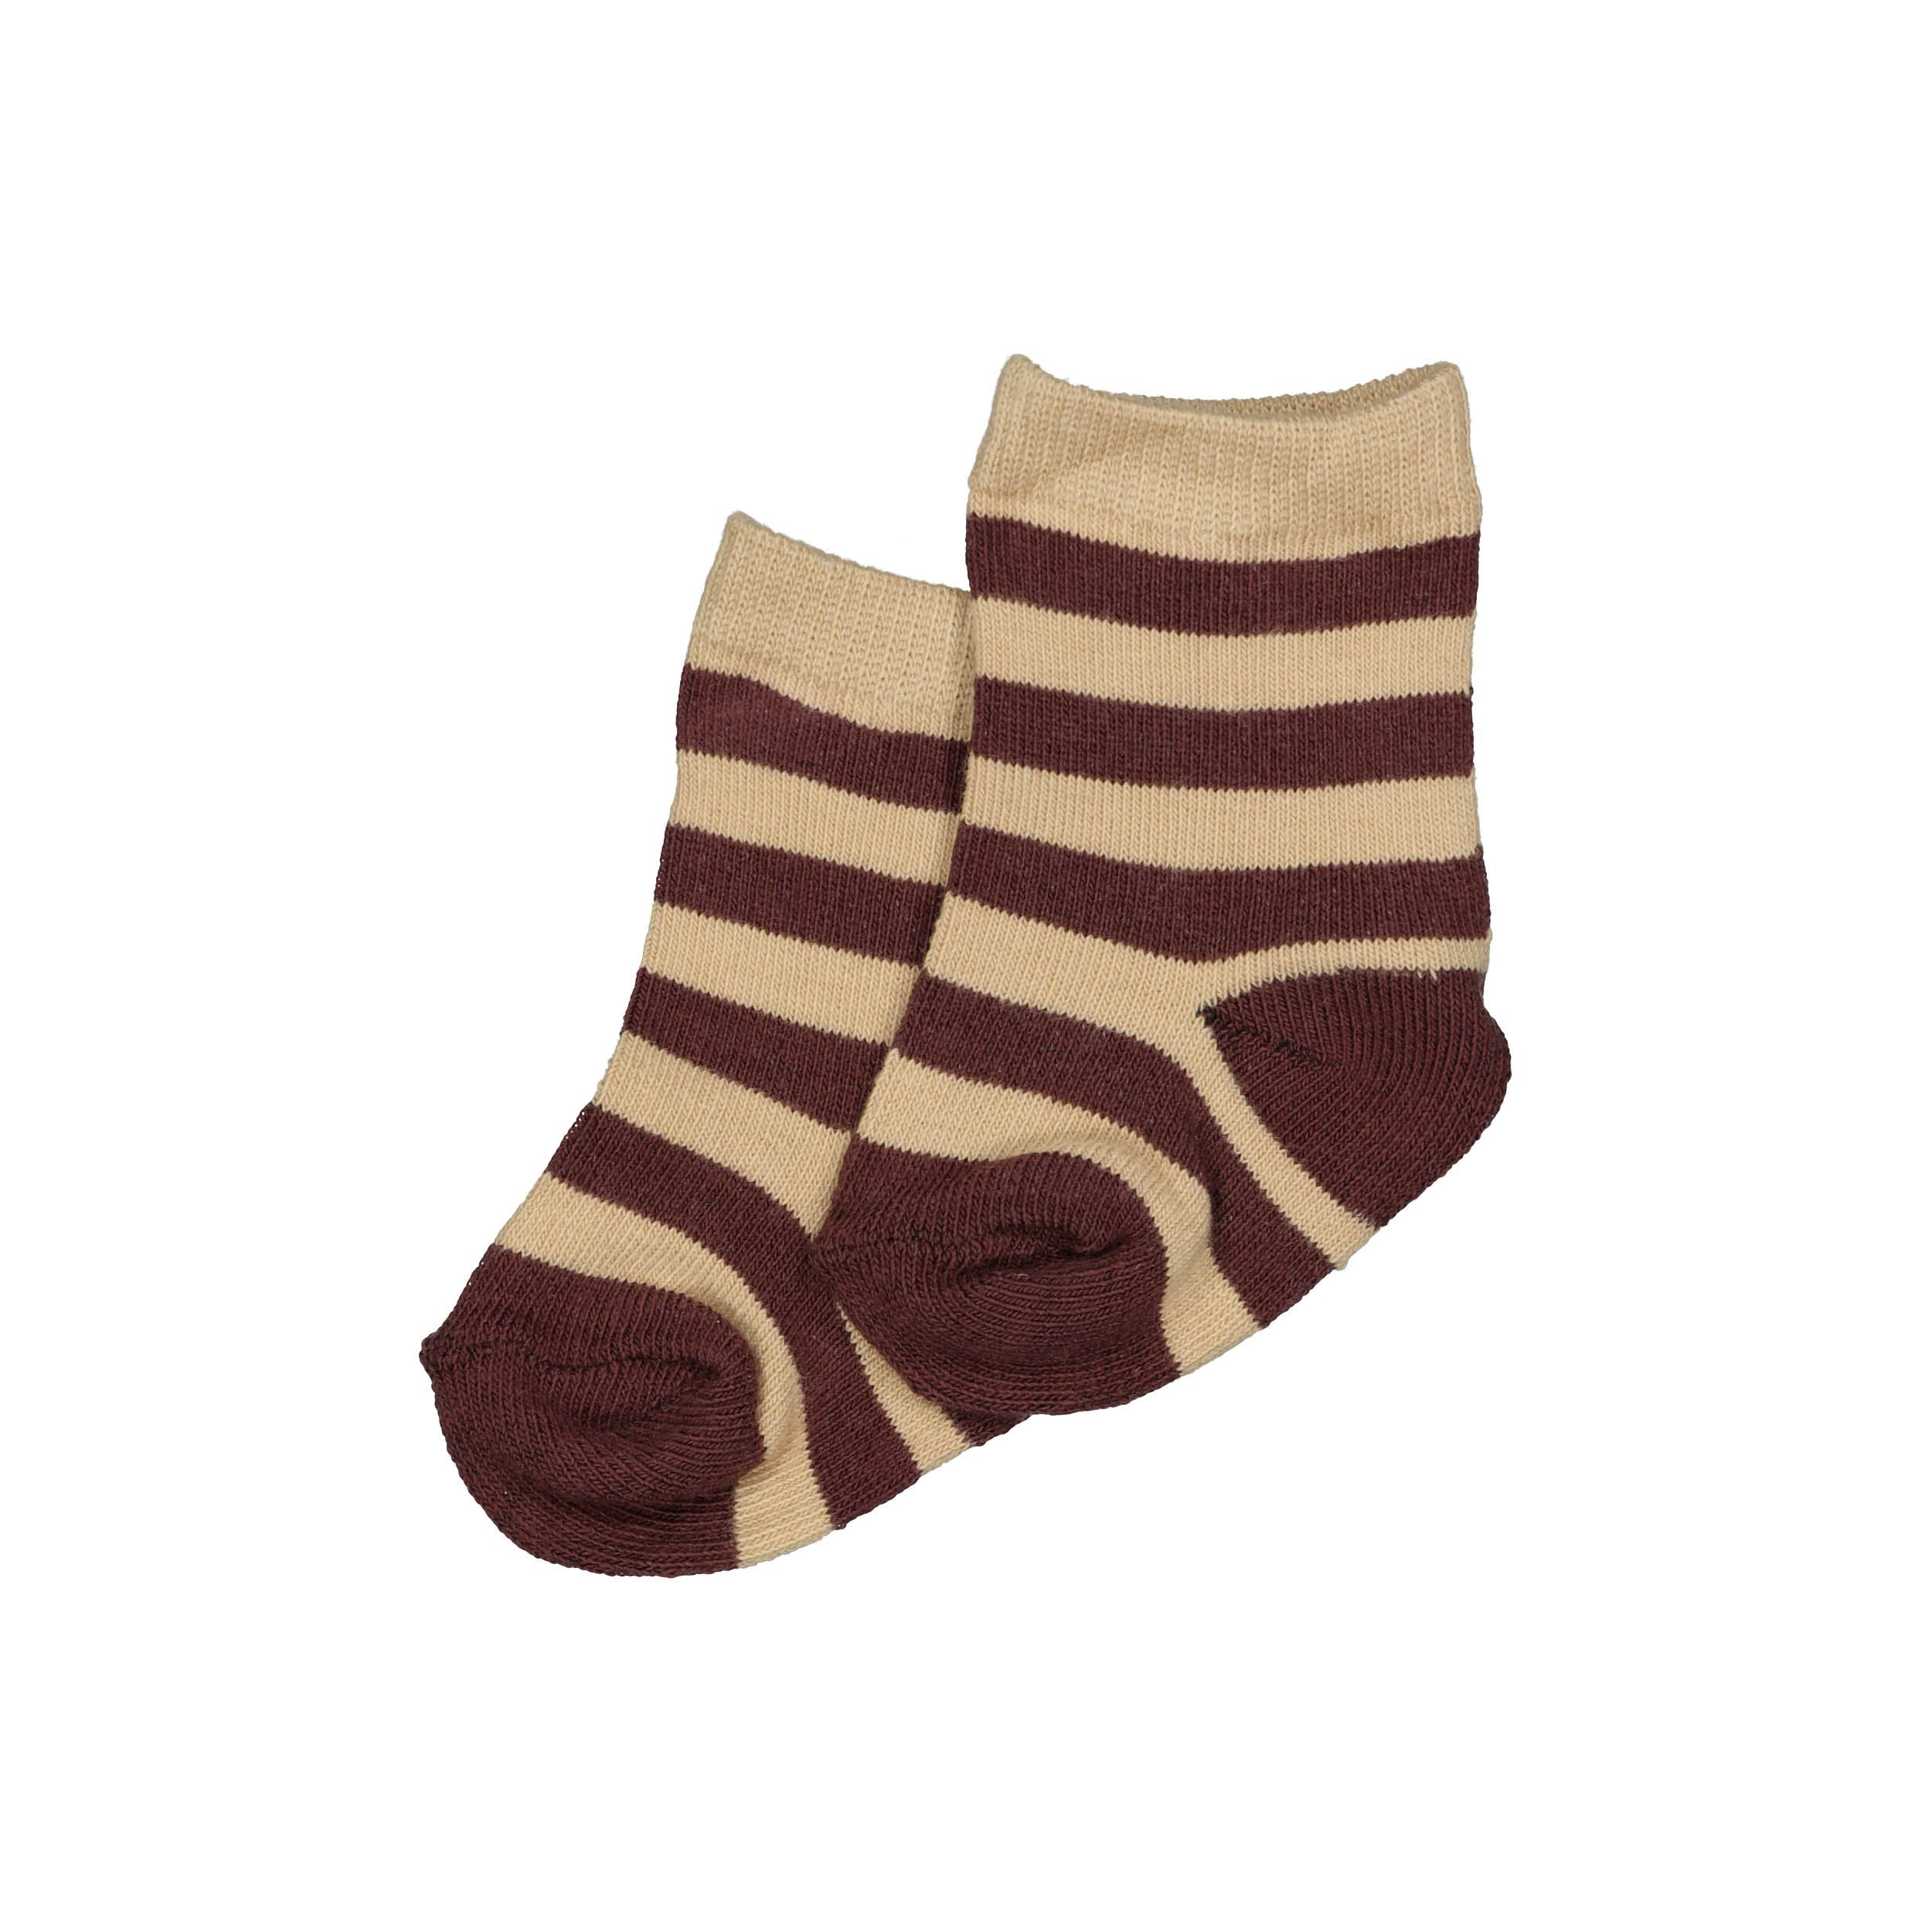 Jongens Socks MILES NBW21 van Quapi Newborn in de kleur AOP Sand Stripe  in maat ONESIZE.